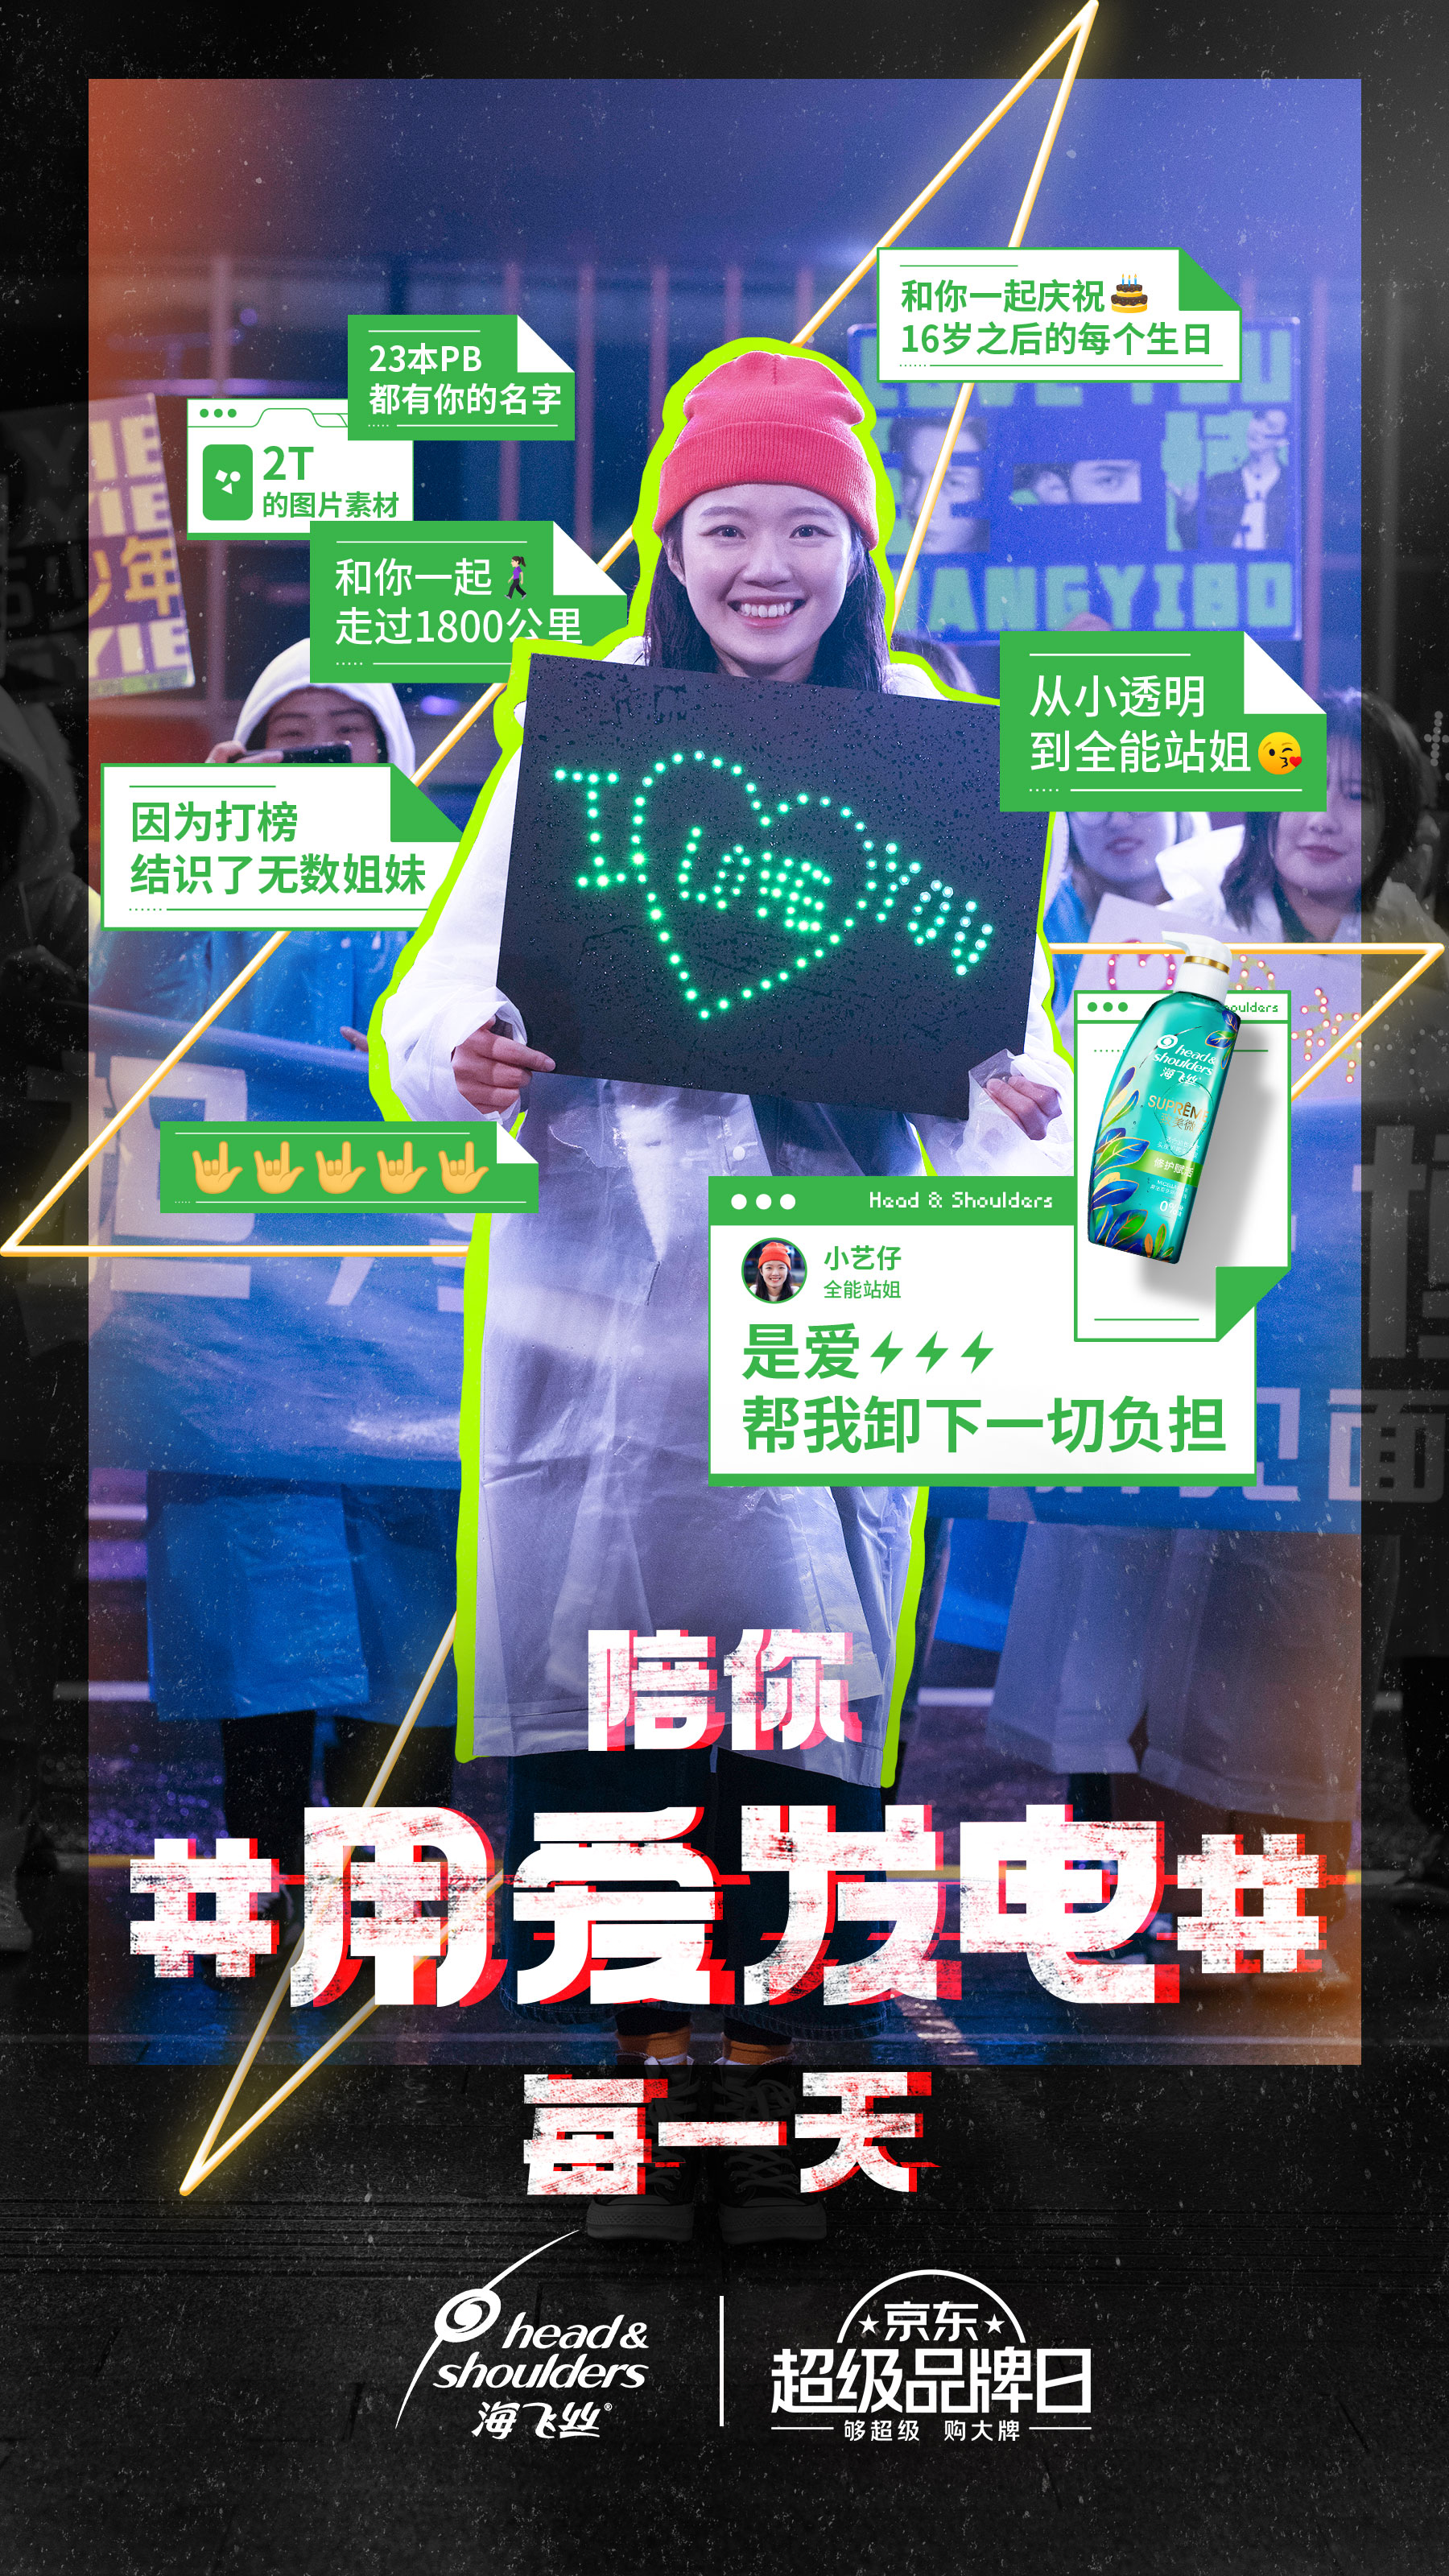 宝洁京东超级品牌日广告：陪你用爱发电每一天